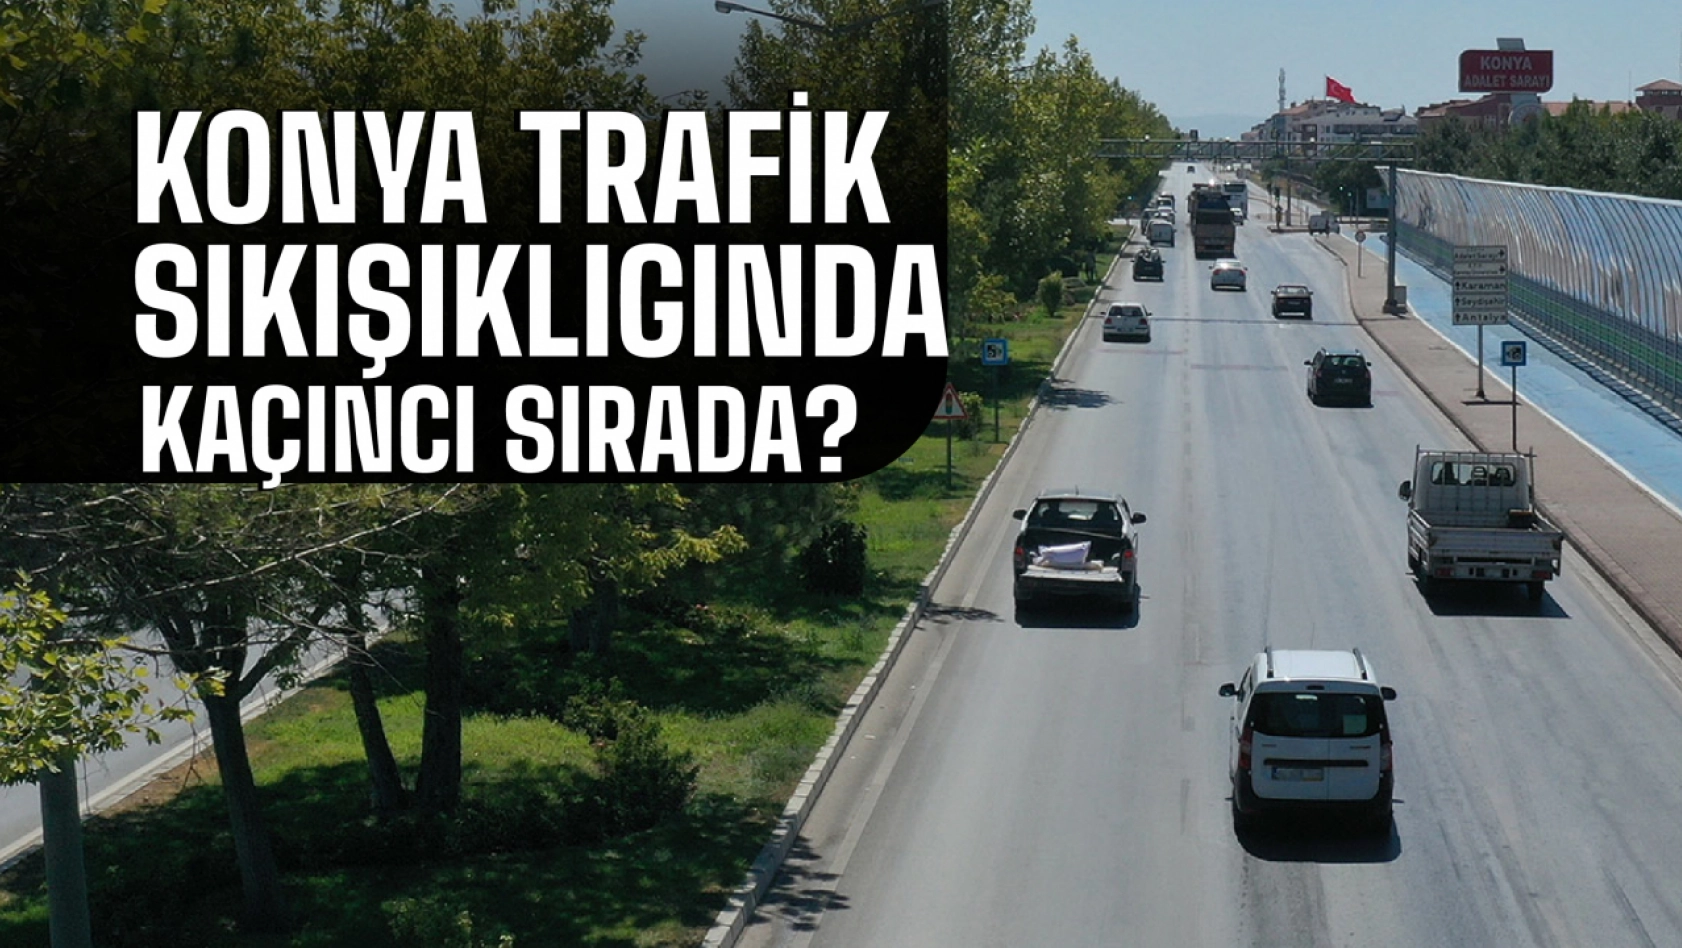 Konya'nın trafik sıkışıklığında Dünya ve Türkiye'deki sırası belli oldu